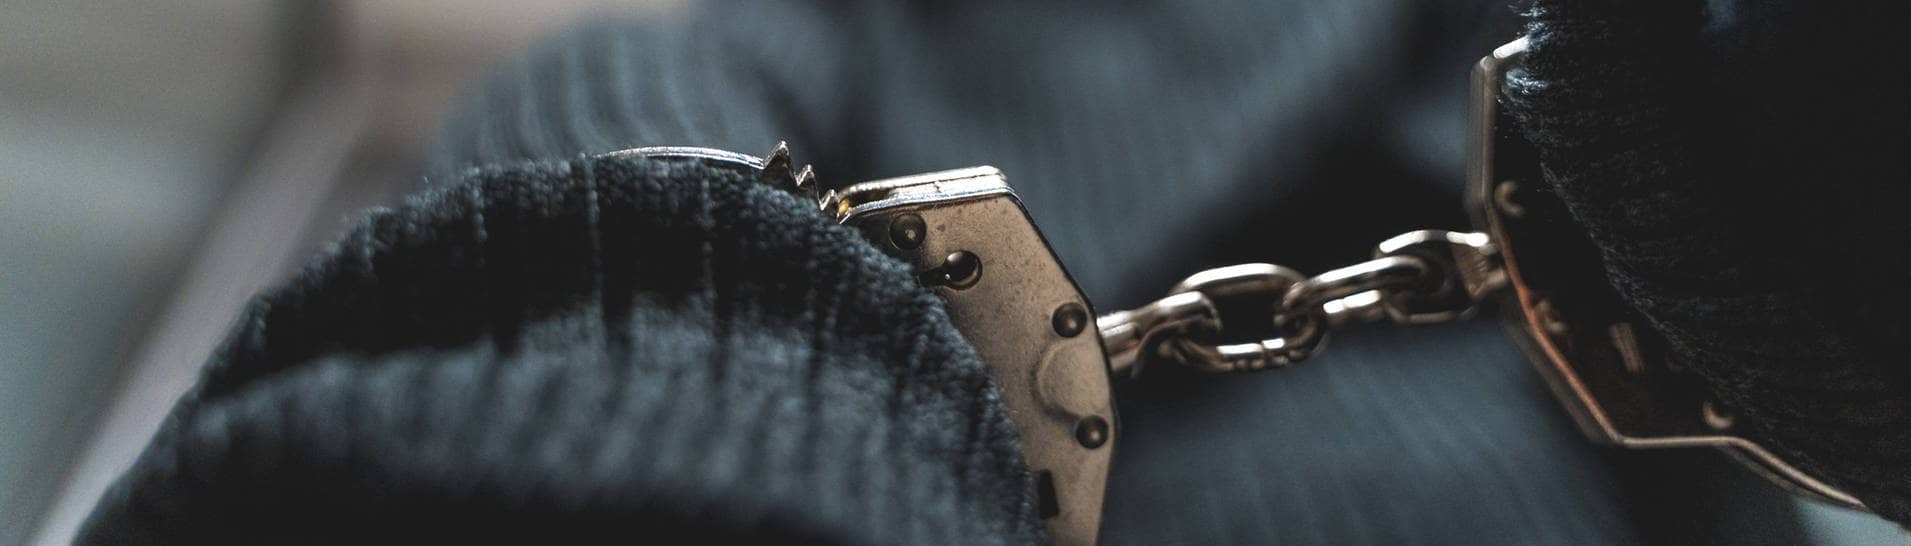 Ein Einbrecher in Handschellen (Symbolbild) - Mutmaßlicher Räuber in New York wegen seiner bunten Unterhose überführt